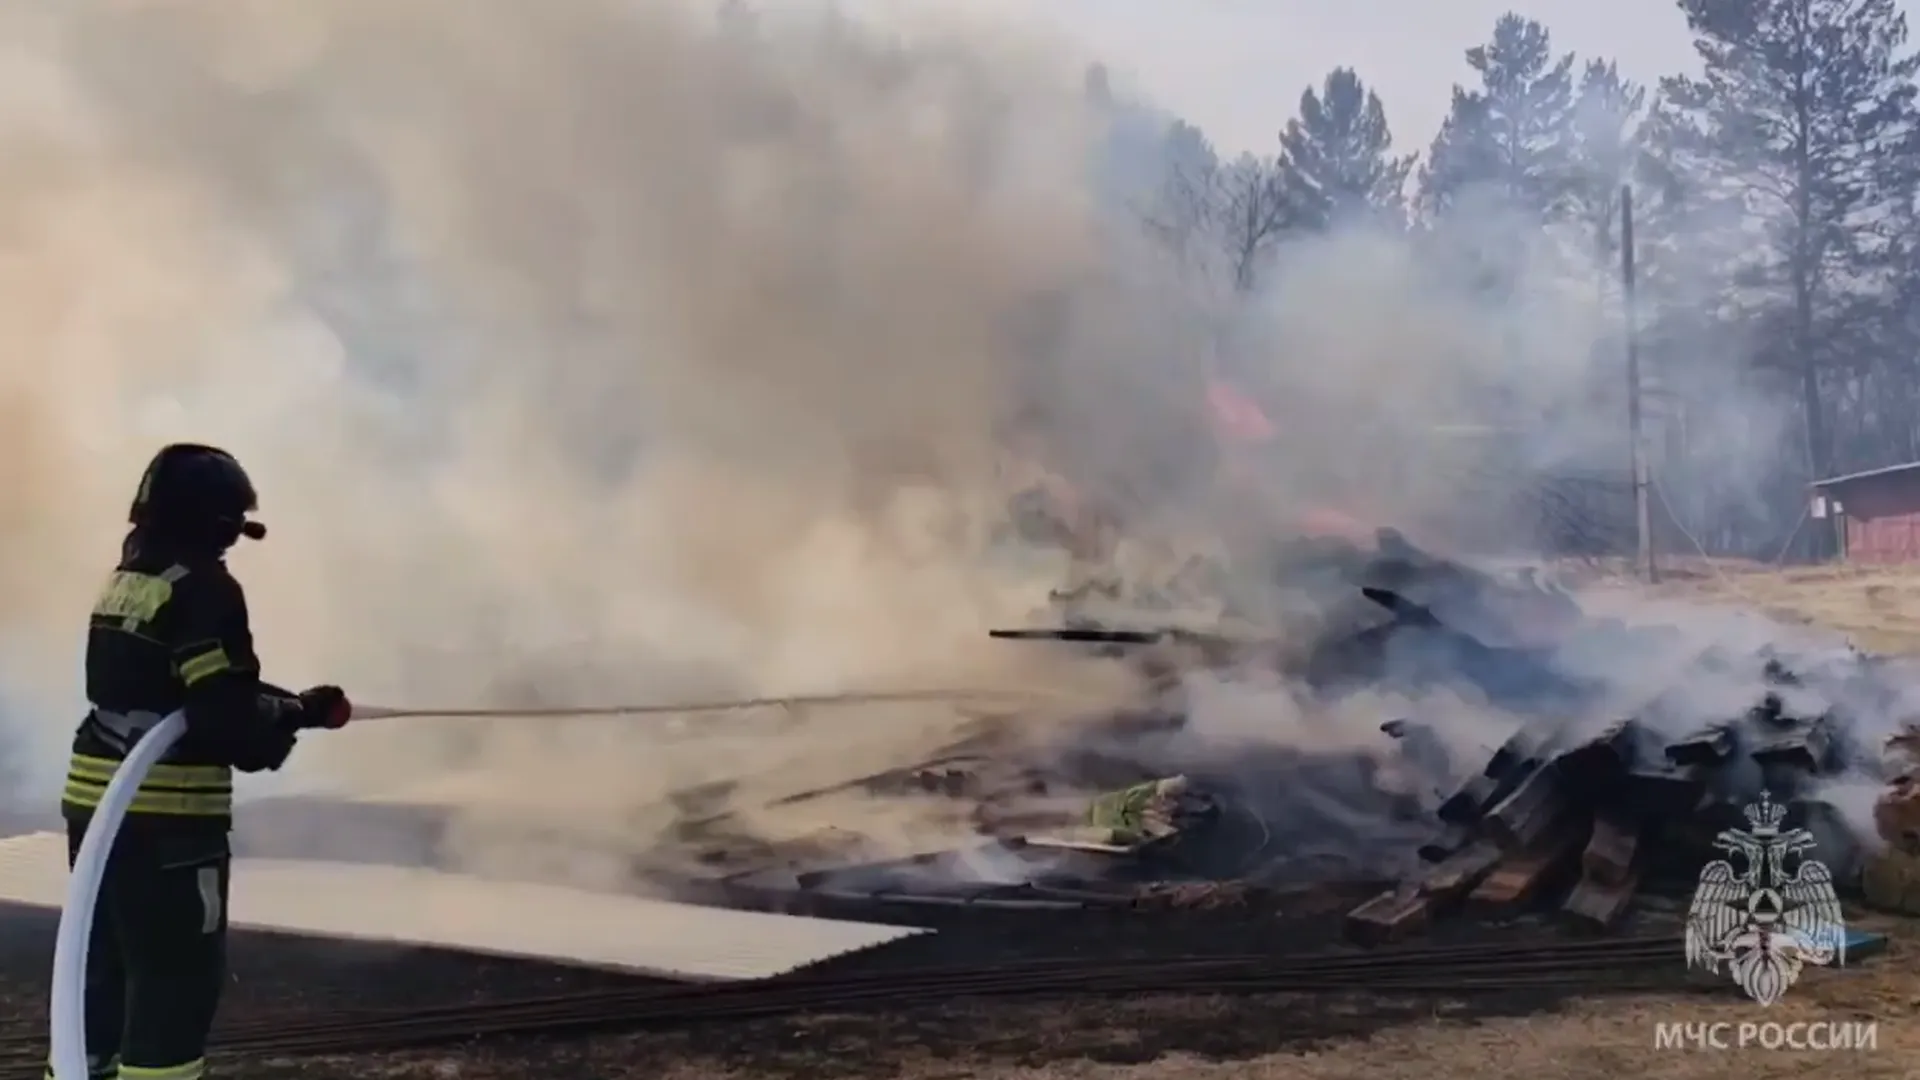 Пожарные ликвидировали открытое горение в Читинском районе Забайкалья